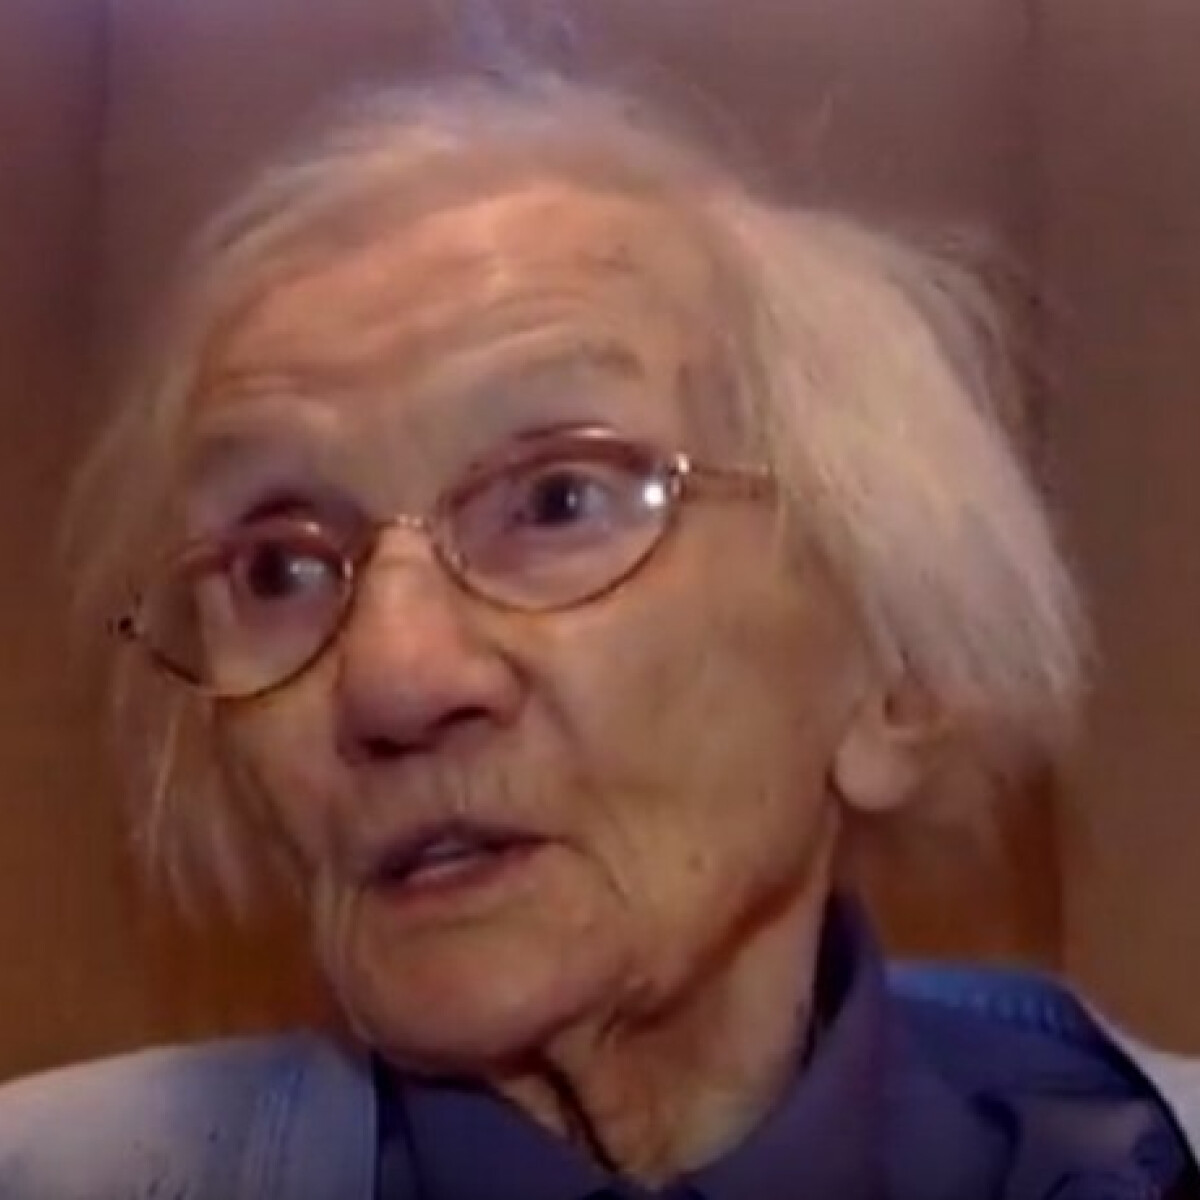 Egy étel minden nap + férfimentesség? Ez volt a 109 éves néni hosszú életének titka!